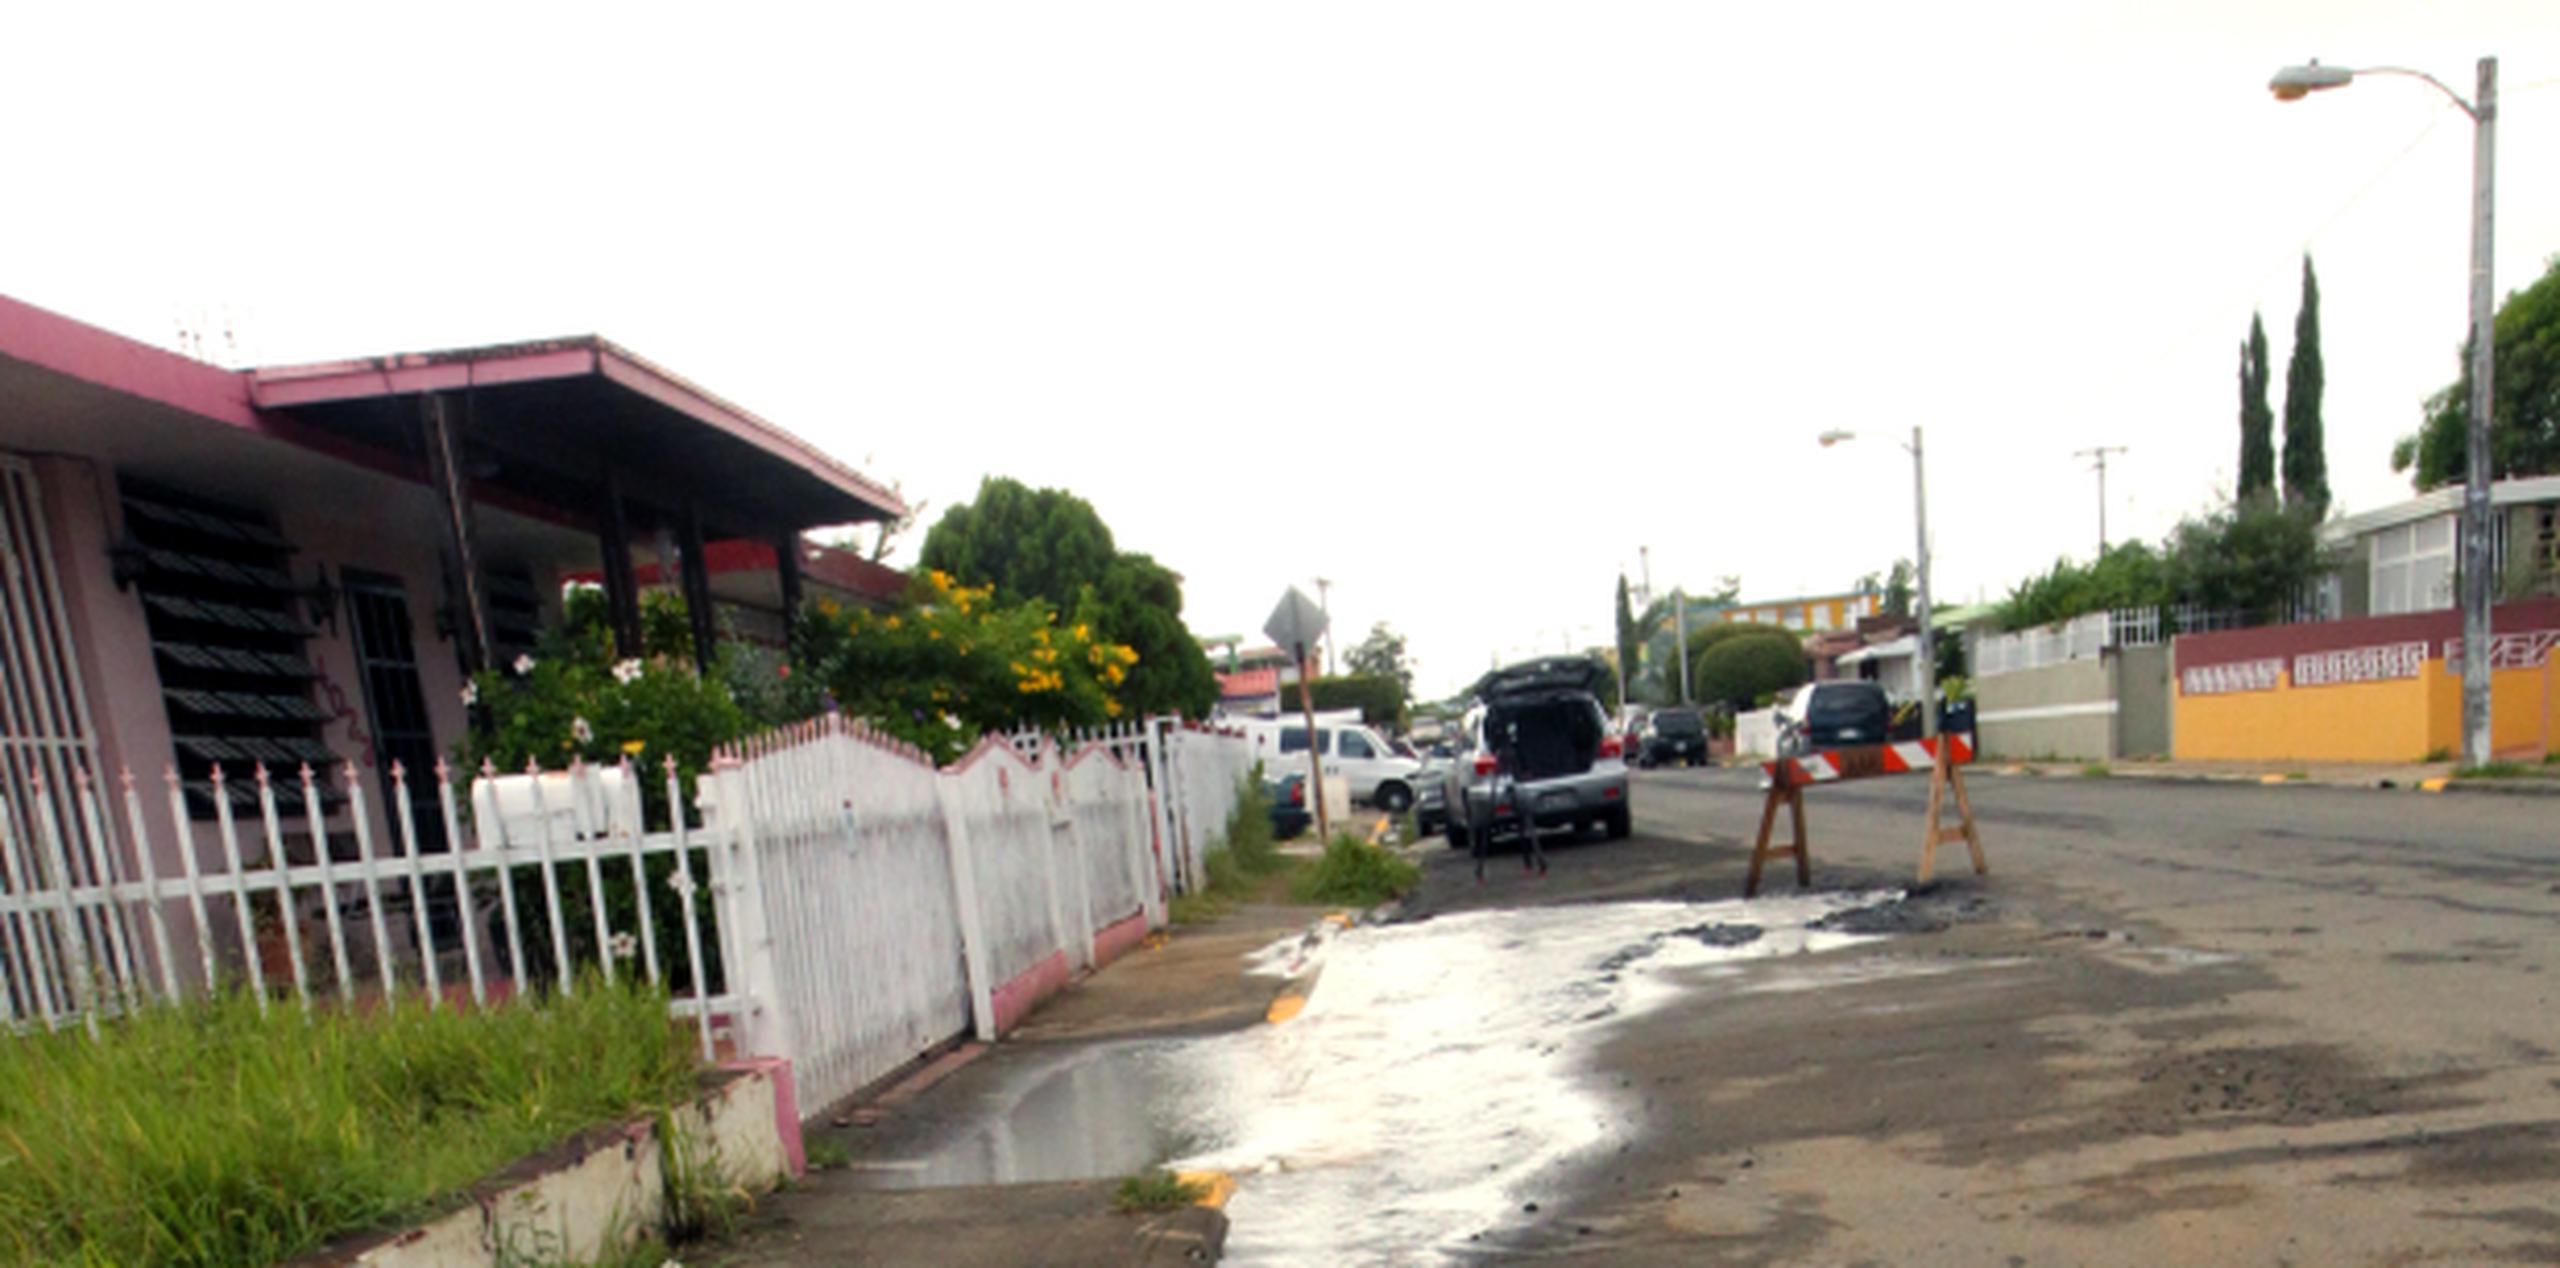 Vecinos de la calle Carmen Buzello dicen que hay unos nueve postes apagados. (Archivo)